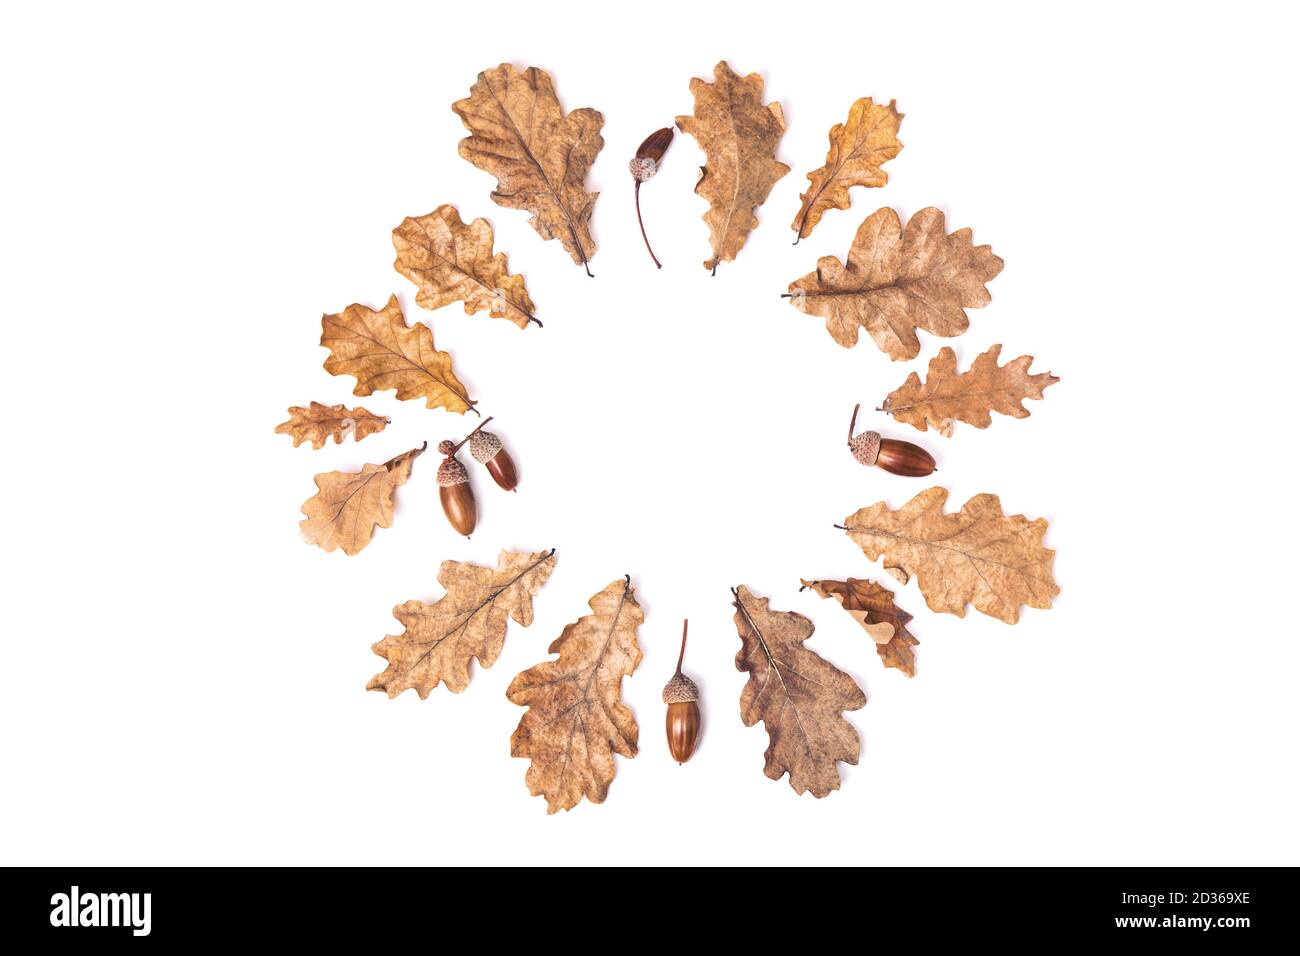 Kranz oder Kreis aus herbstlich getrockneten Blättern, Eichenblättern und Eicheln isoliert auf weißem Hintergrund, flach liegend, Draufsicht, Kopierraum. Herbstsaison Konz Stockfoto